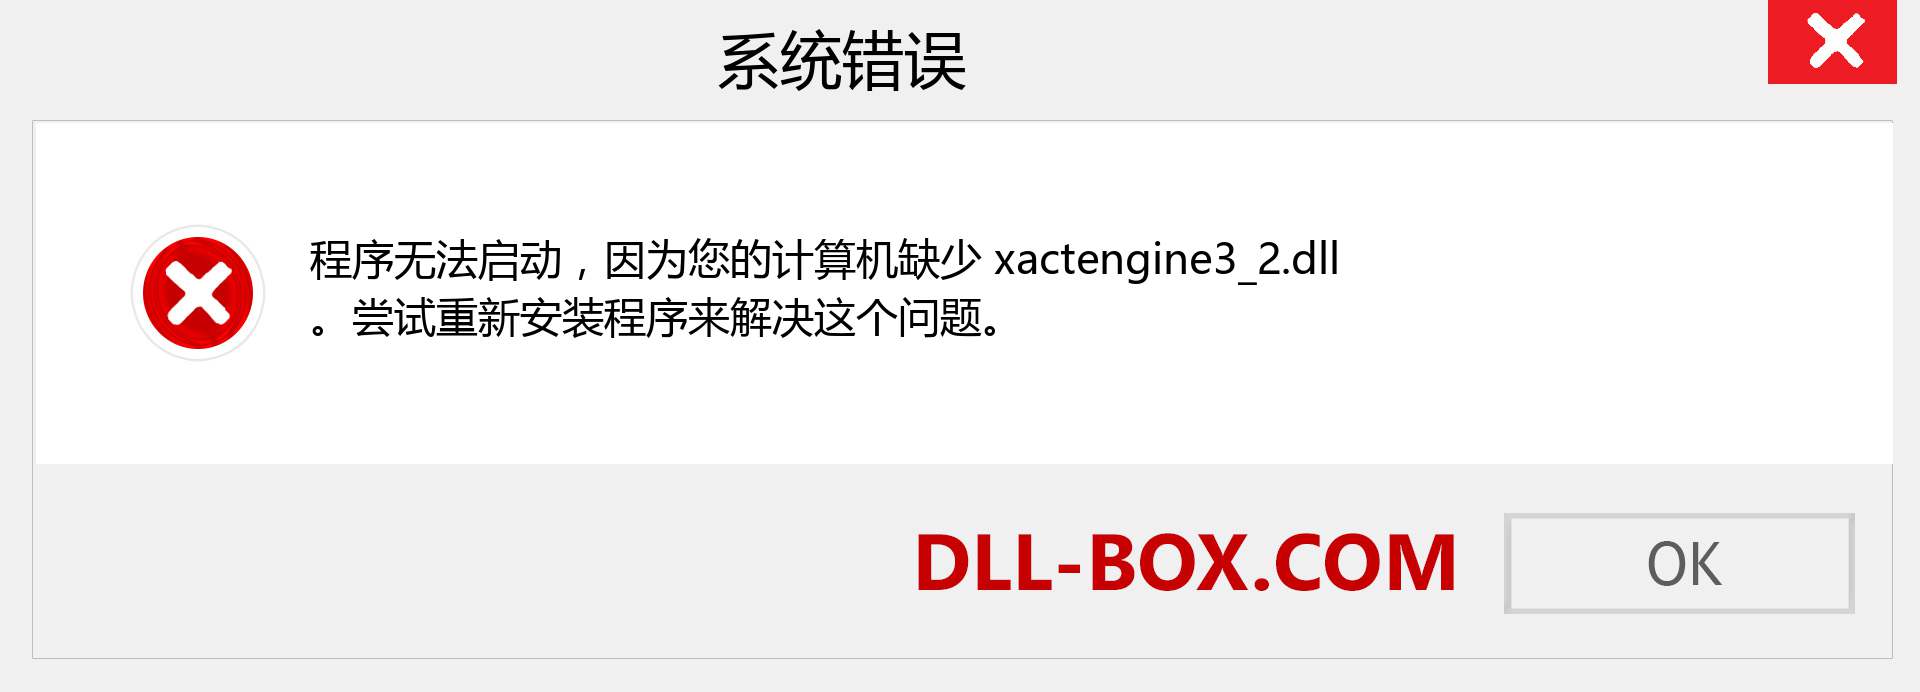 xactengine3_2.dll 文件丢失？。 适用于 Windows 7、8、10 的下载 - 修复 Windows、照片、图像上的 xactengine3_2 dll 丢失错误